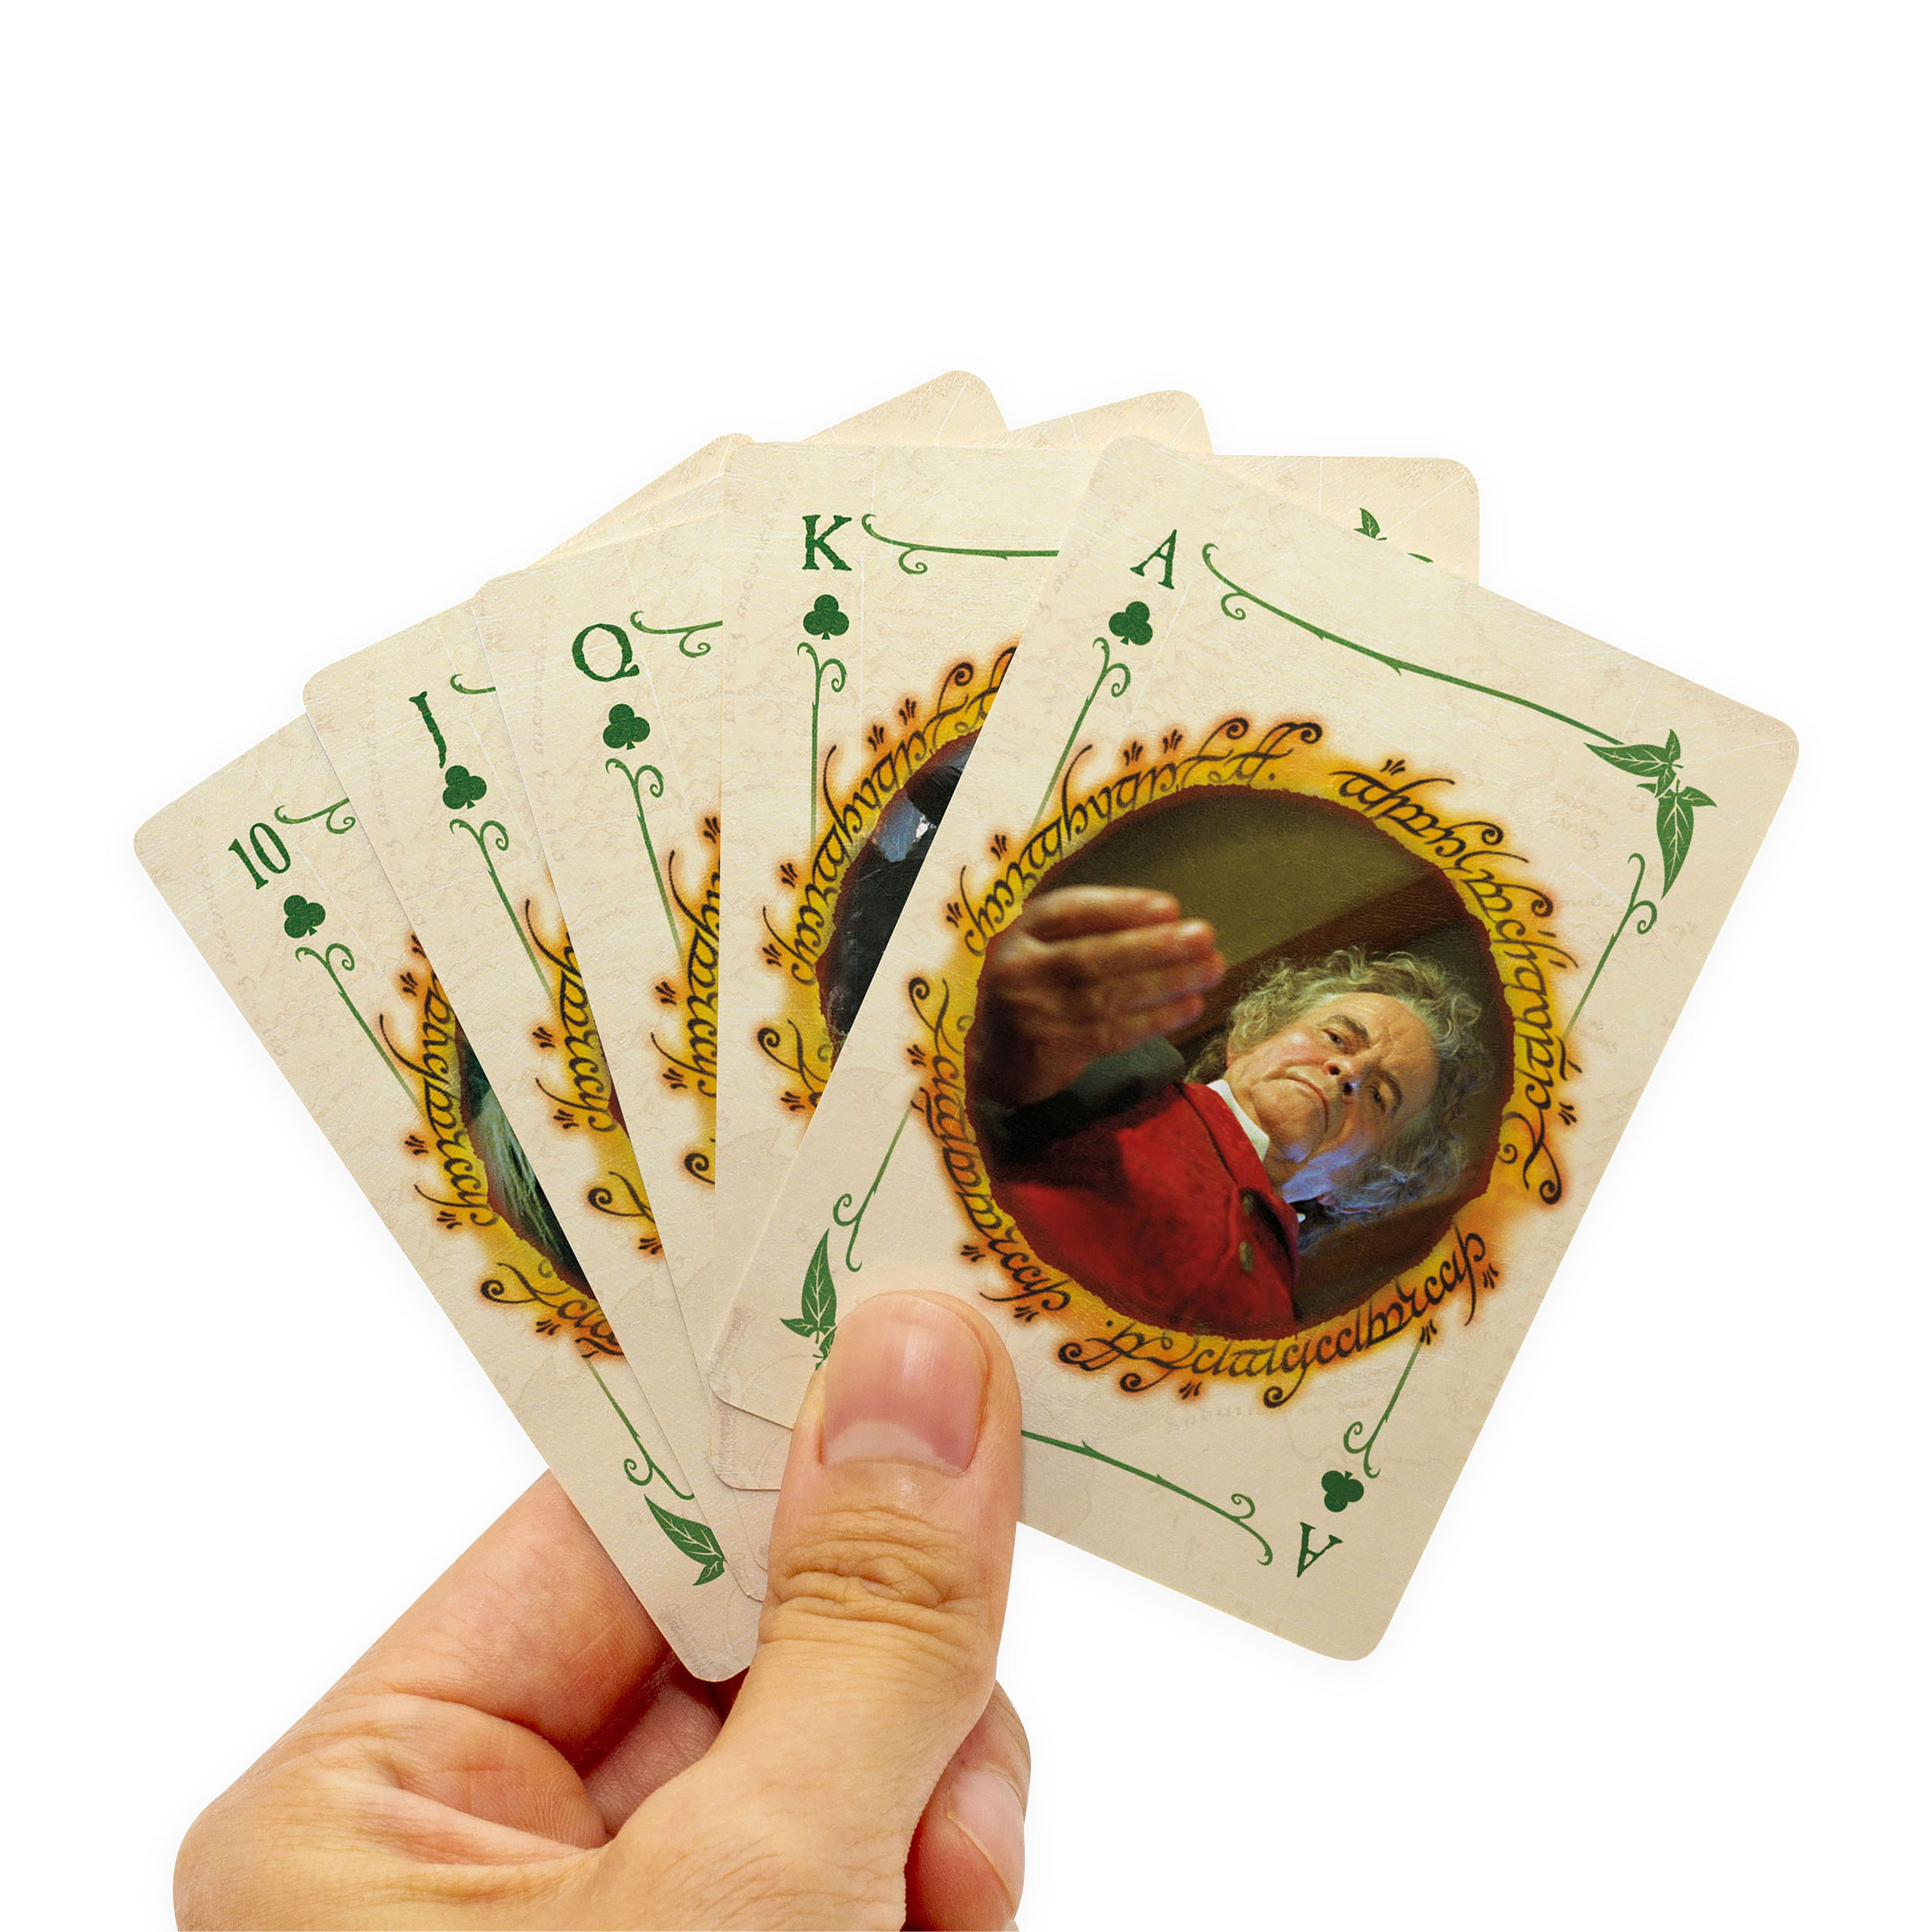 Herr der Ringe - Die Gefährten Spielkarten